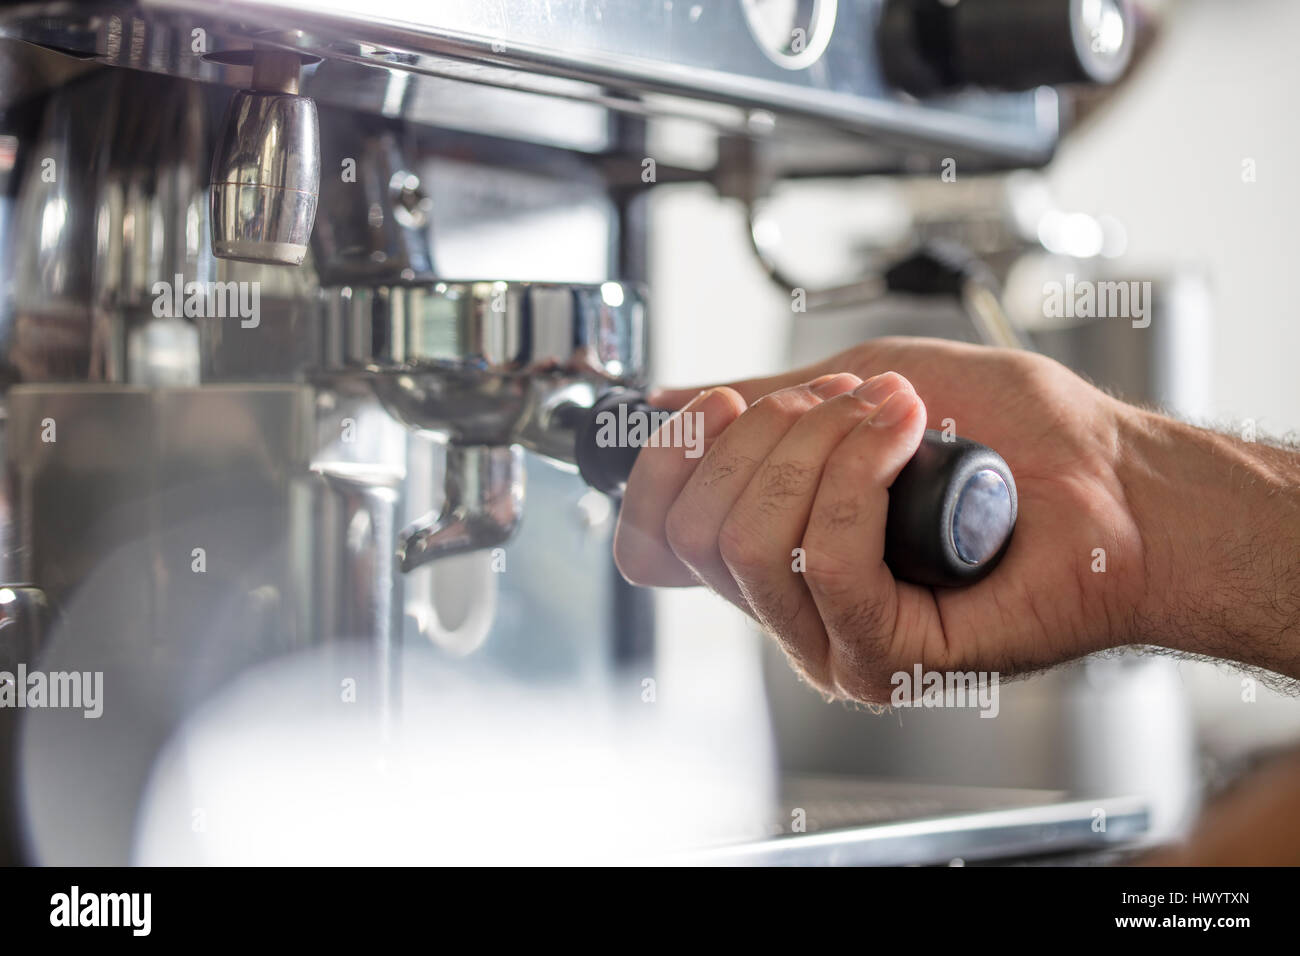 Barista using espresso machine Stock Photo